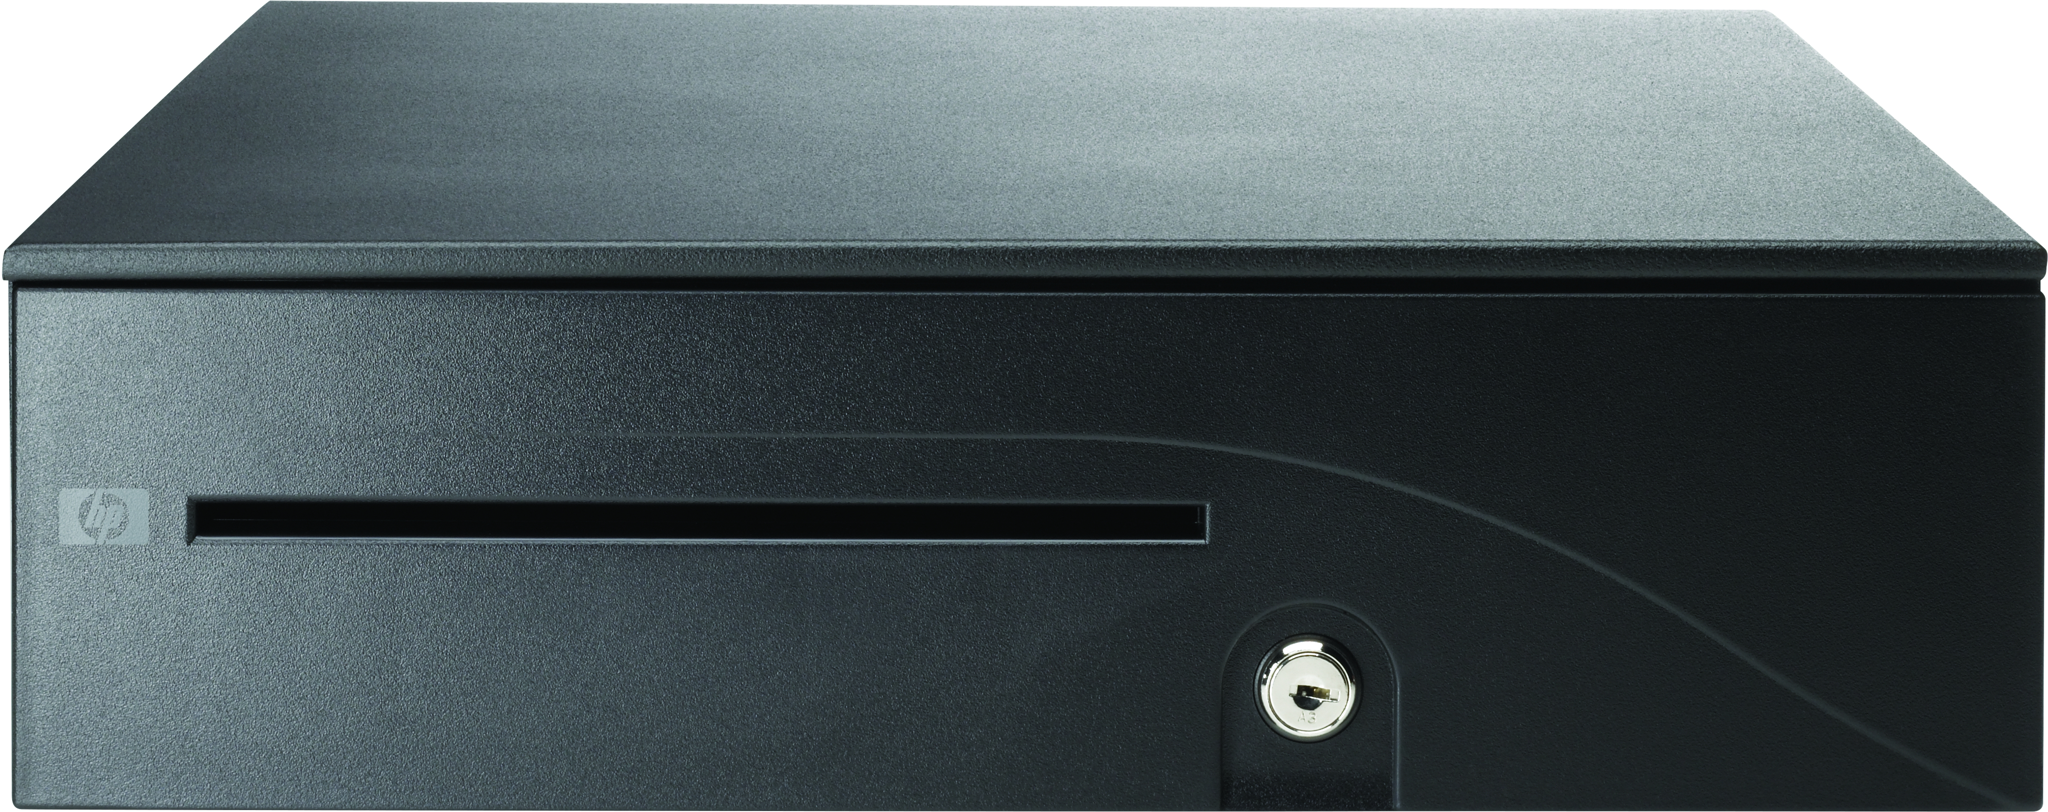 Bild von HP EliteOne 800 G1 - USB